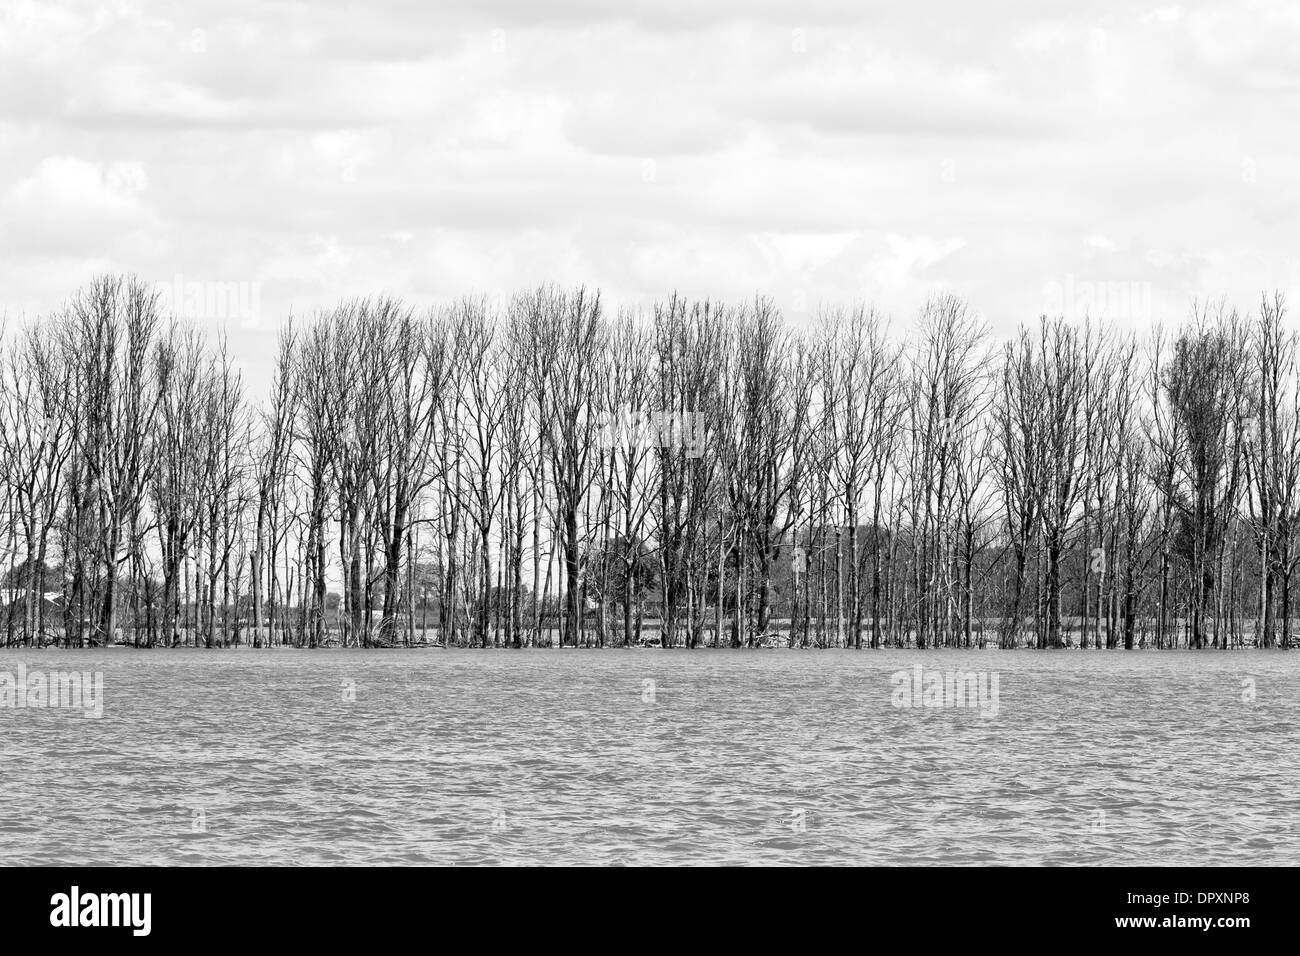 Rangée d'arbres dans le paysage inondé - image en noir et blanc Banque D'Images